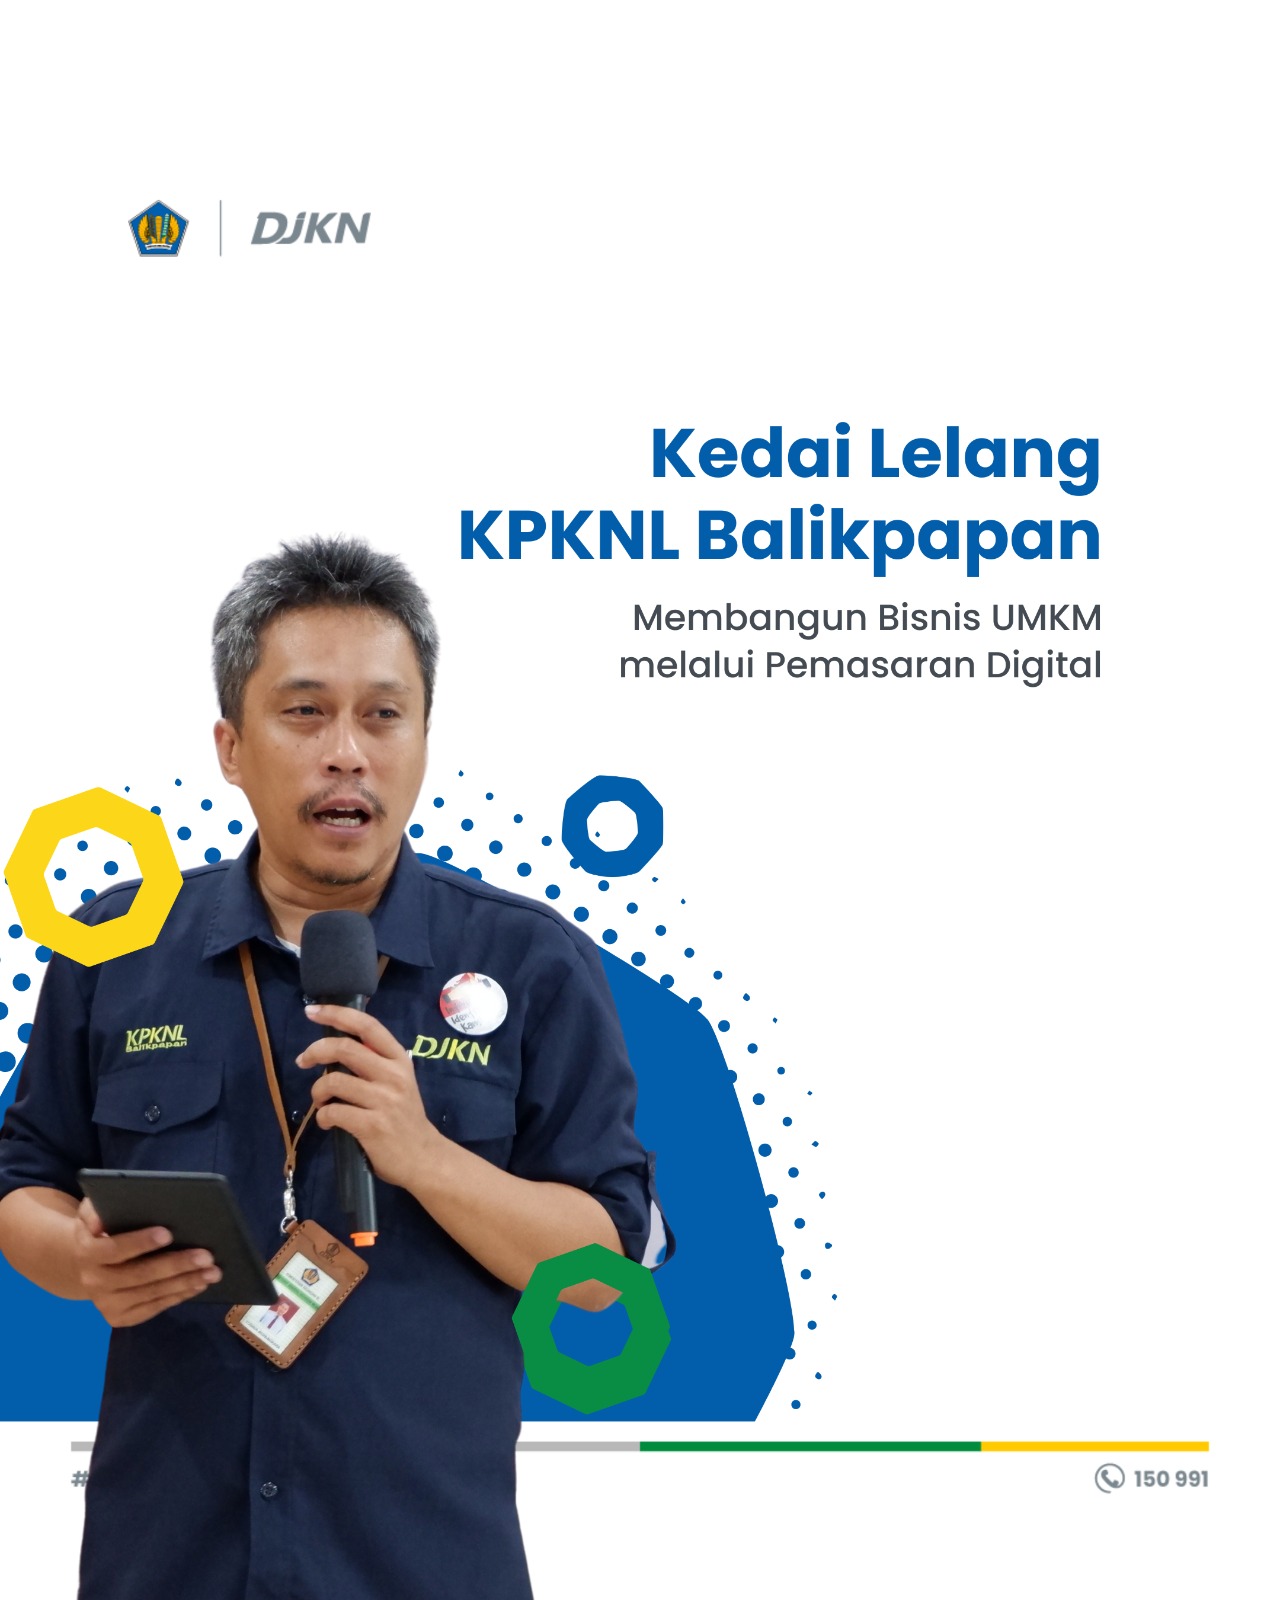 Penyelenggaraan Kedai Lelang "Membangun Bisnis UMKM melalui Pemasaran Digital" oleh KPKNL Balikpapan